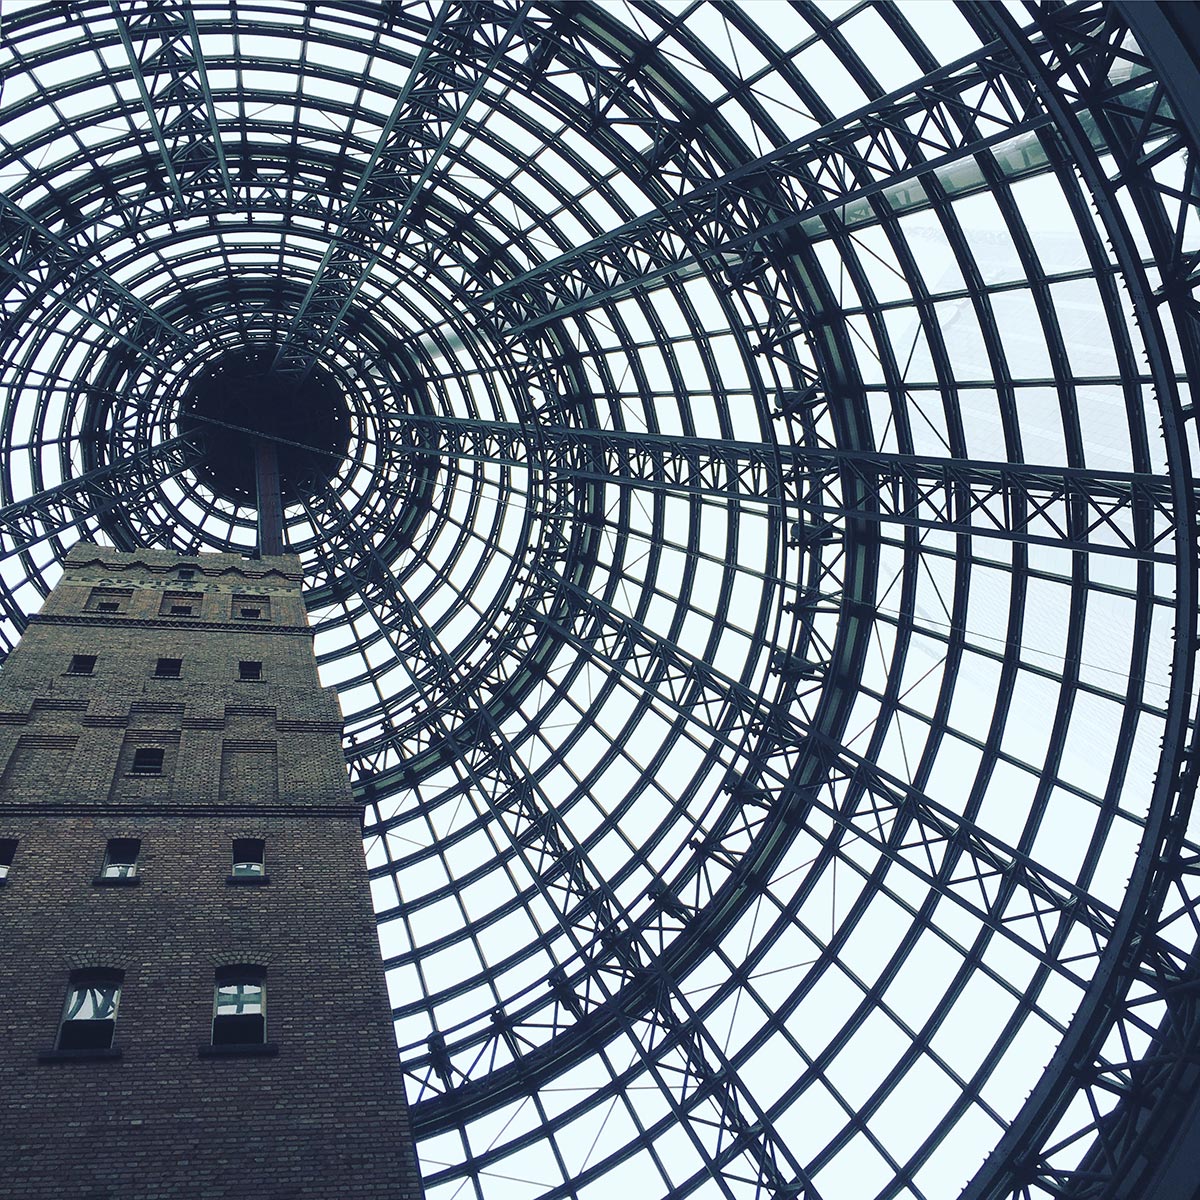 Inside Melbourne Central